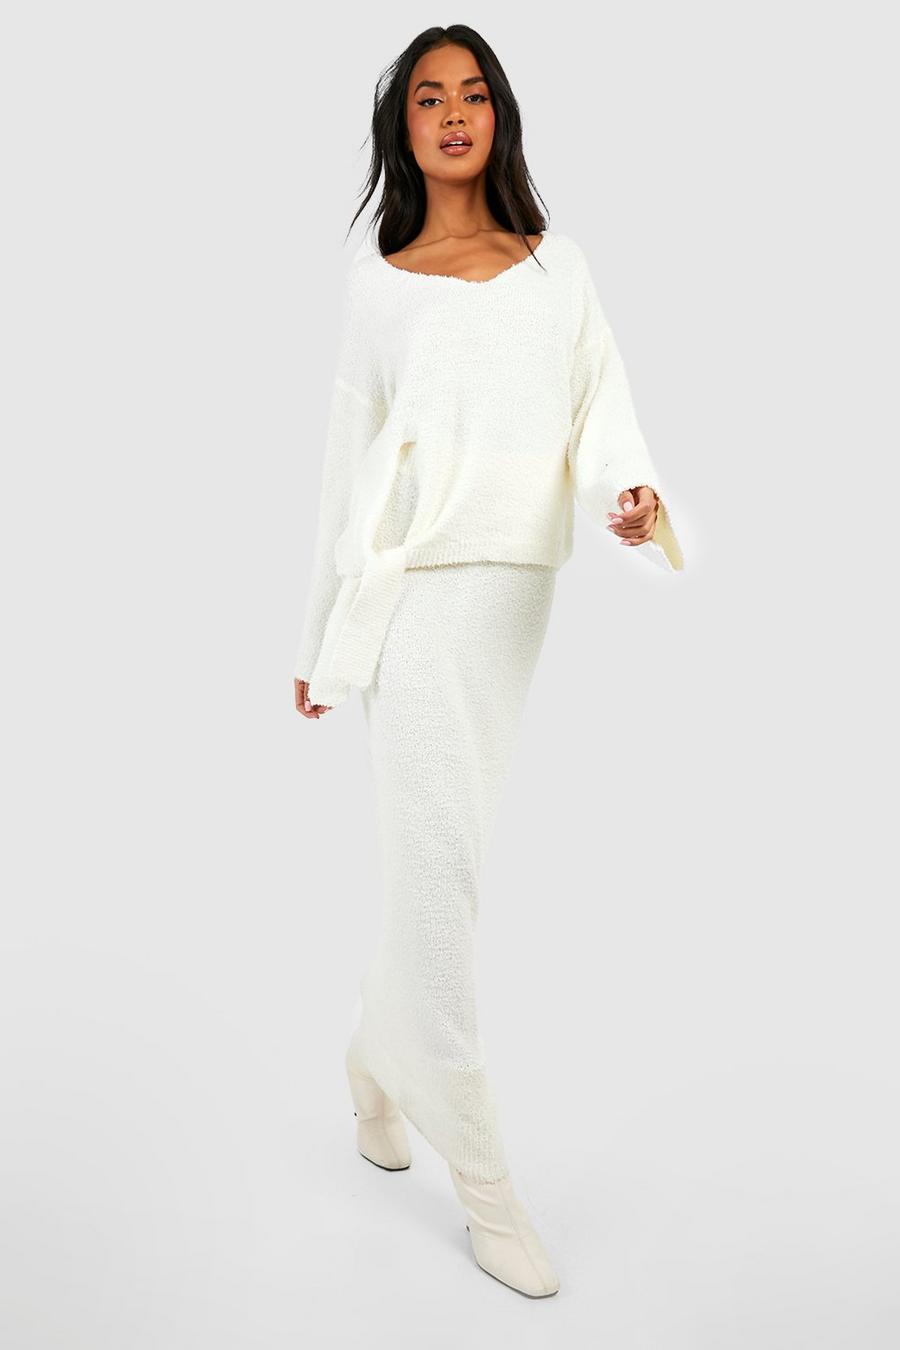 Ensemble premium texturé avec pull ample et jupe longue, Ivory blanc